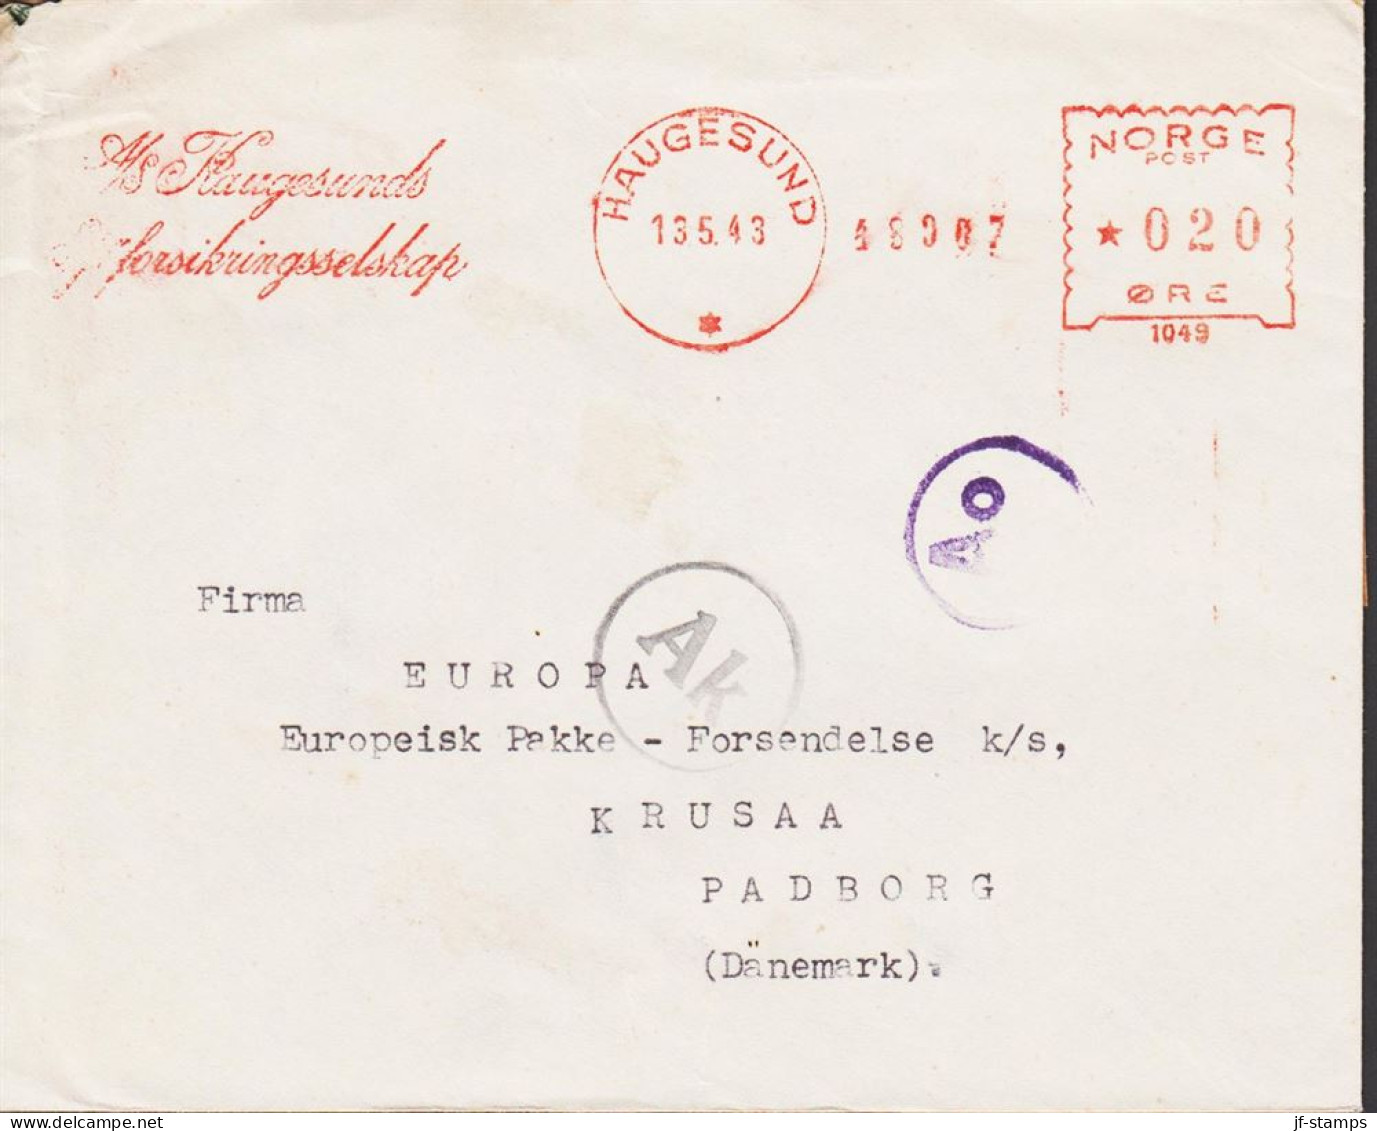 1943. NORGE. Very Interesting Cover To Firma EUROPA Europæisk Pakke Forsendelse, KRUSAA PADBORG DANMARK Ca... - JF545670 - Lettres & Documents